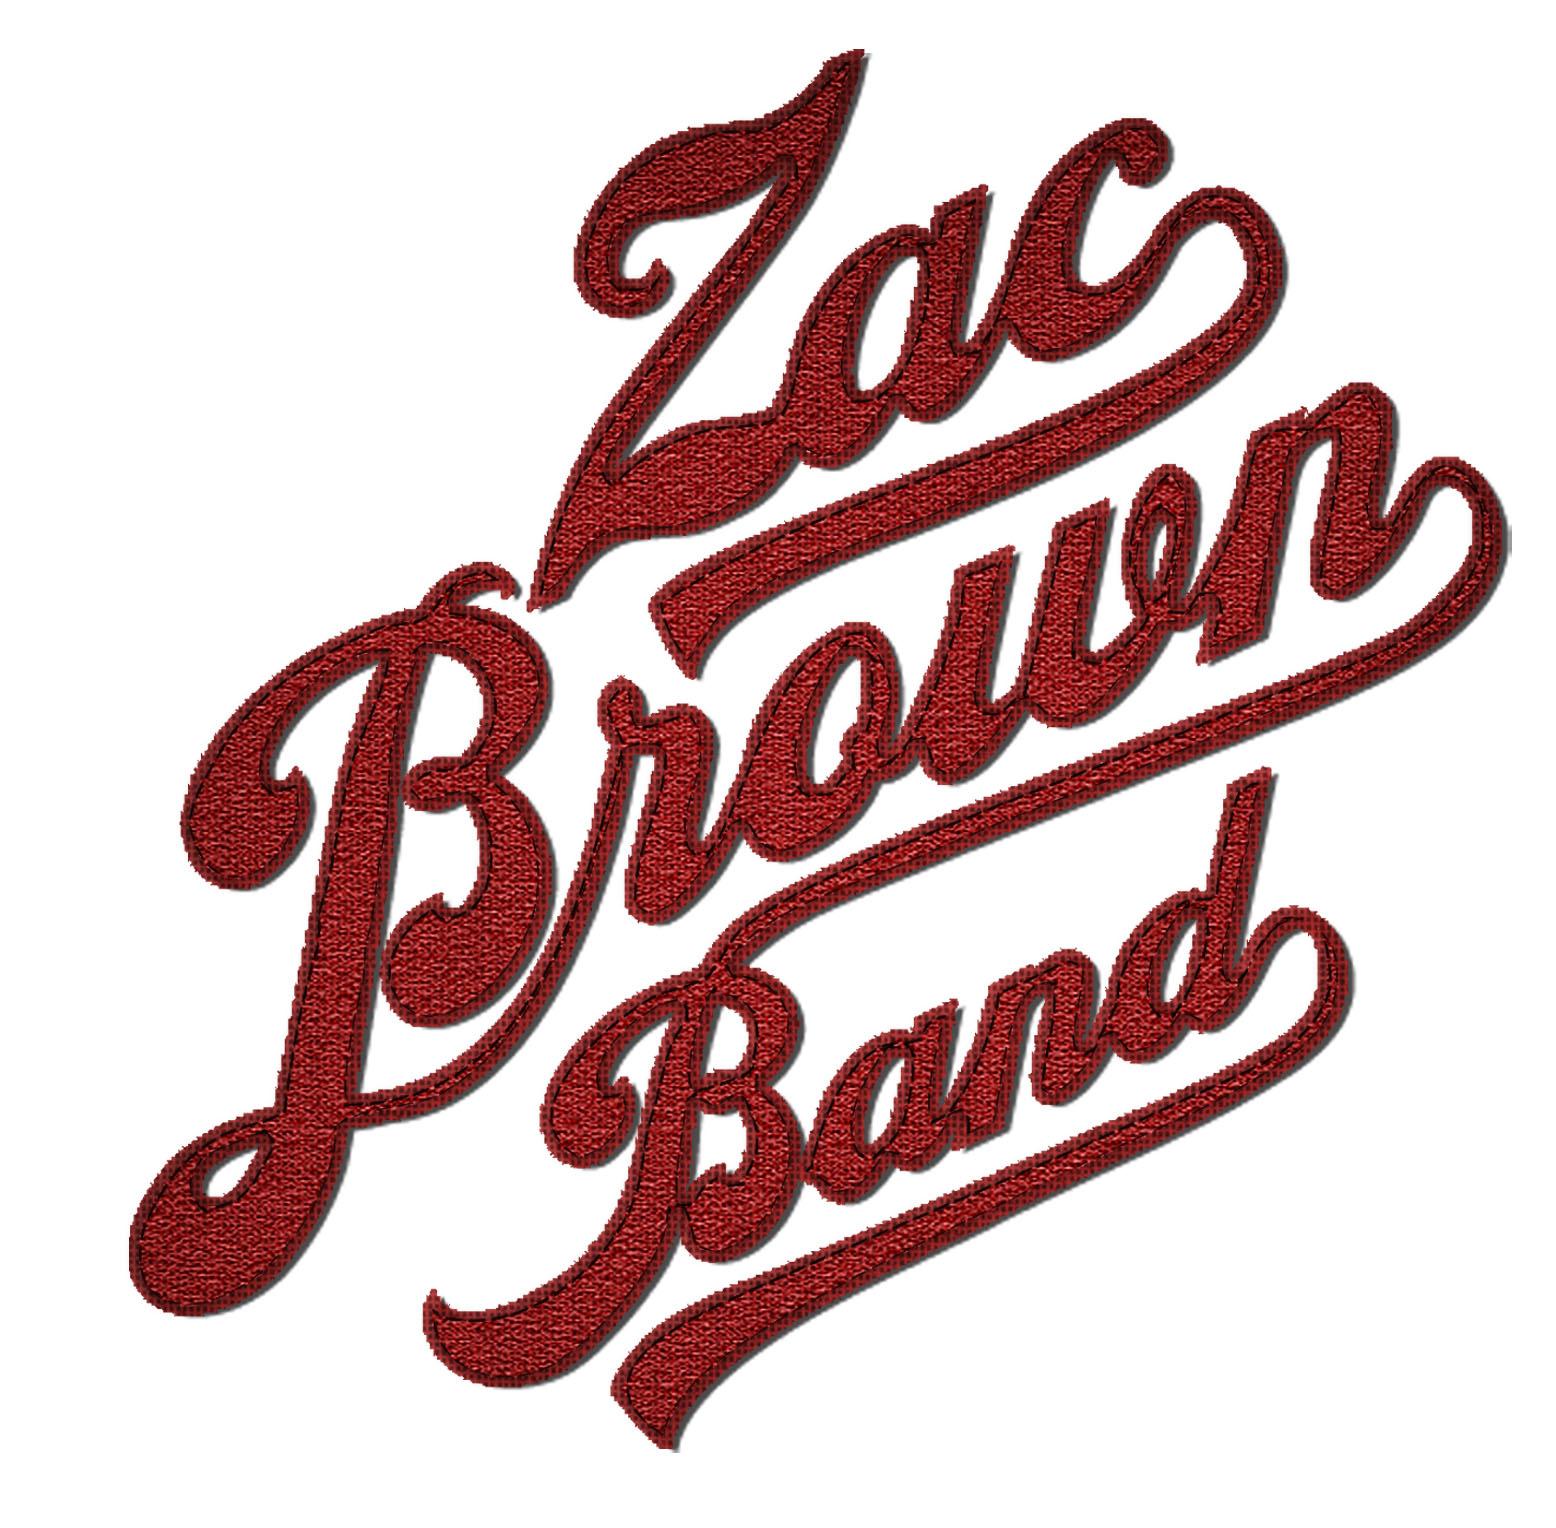 Zac brown band Logos